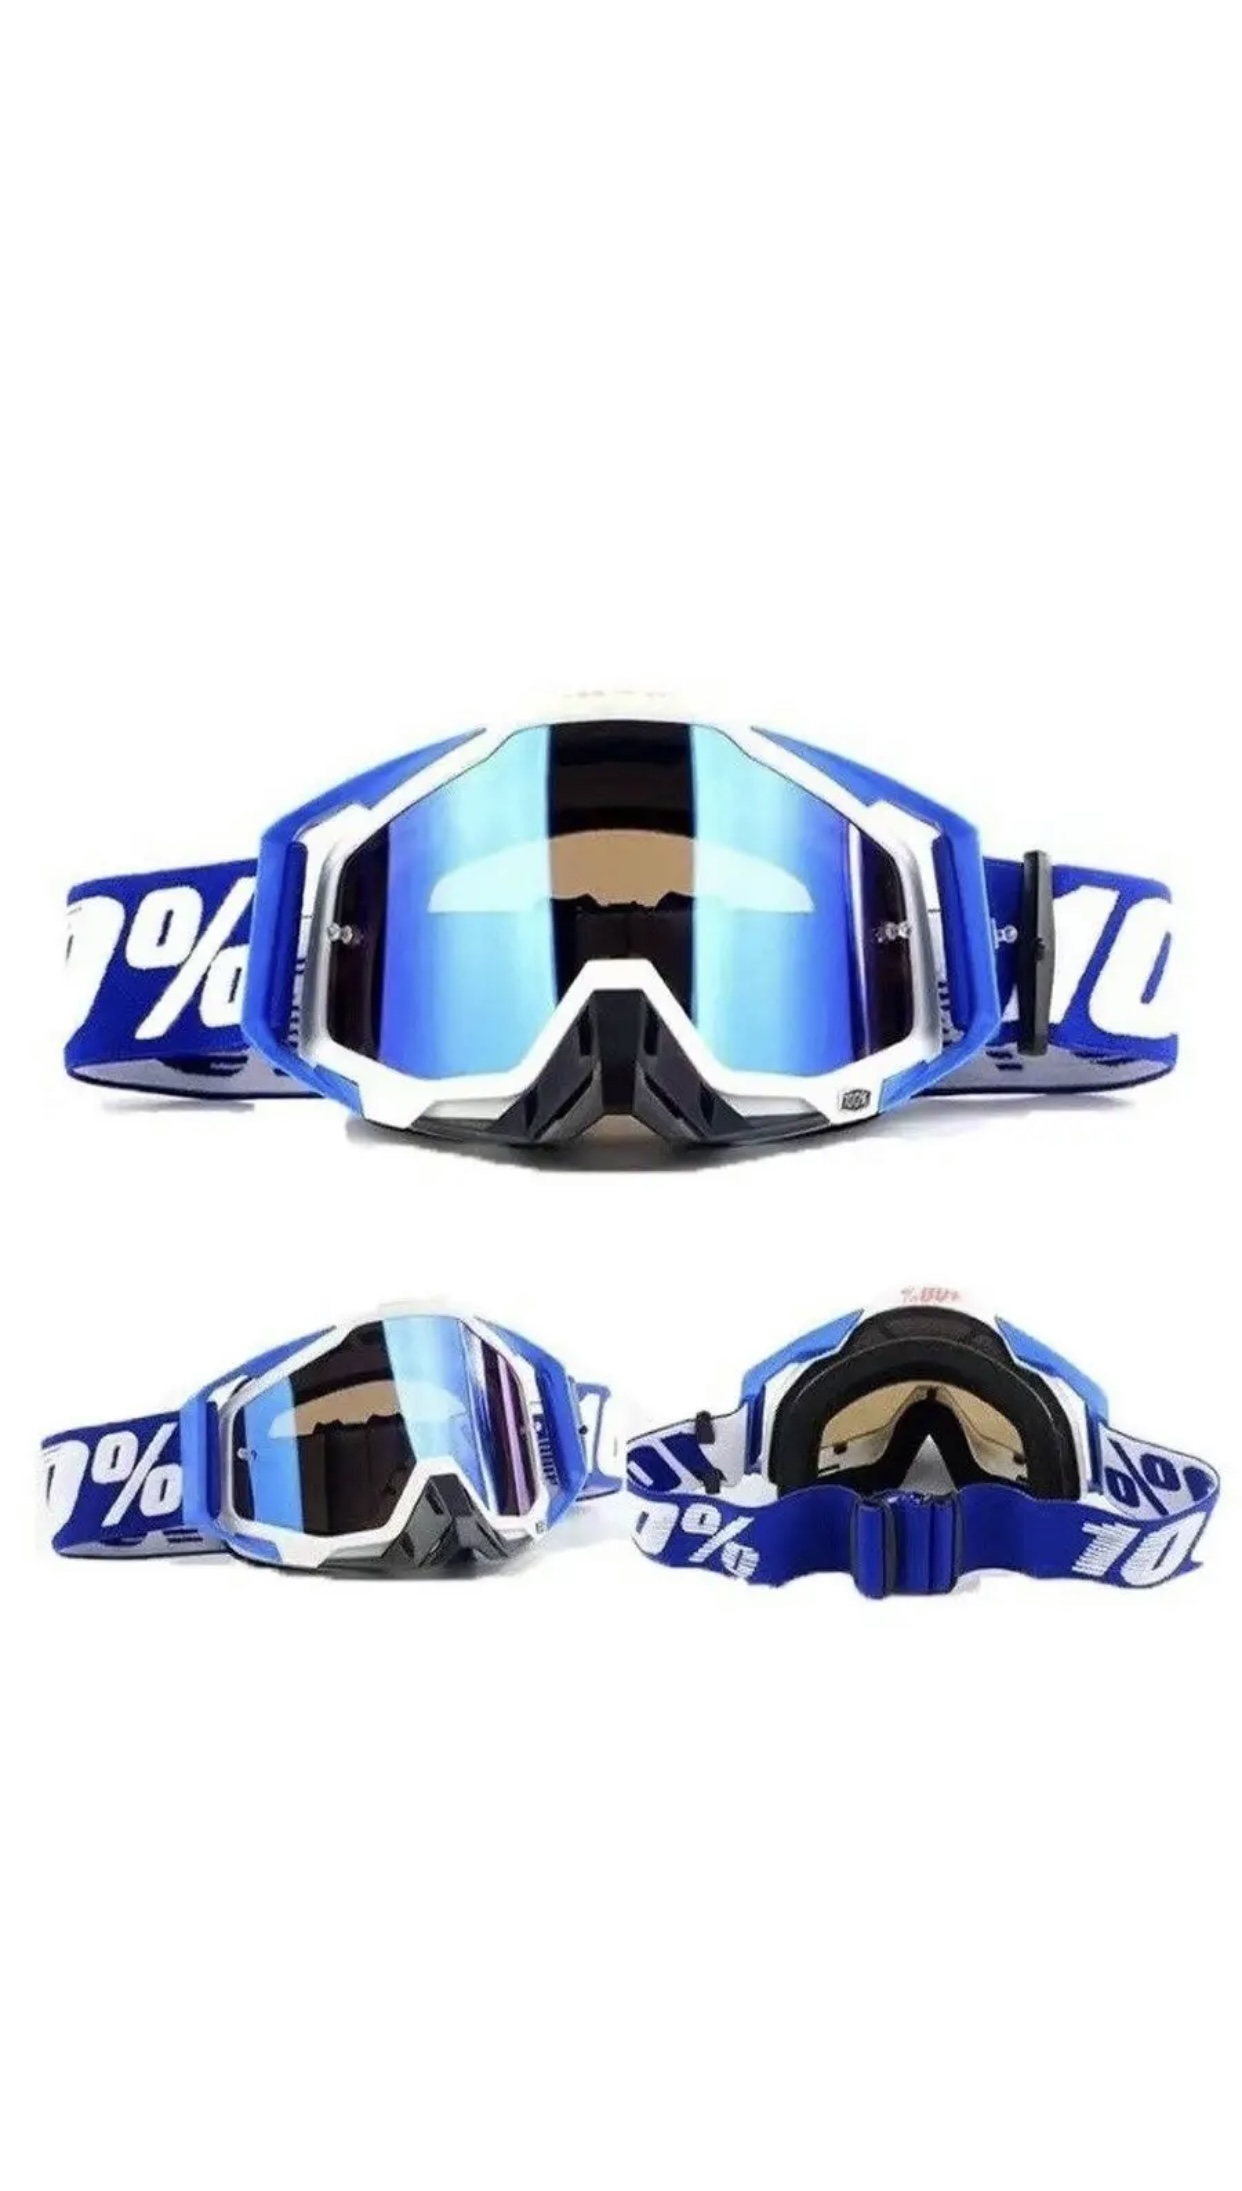 Кроссовые маски Divergent очки (маска) спортивные